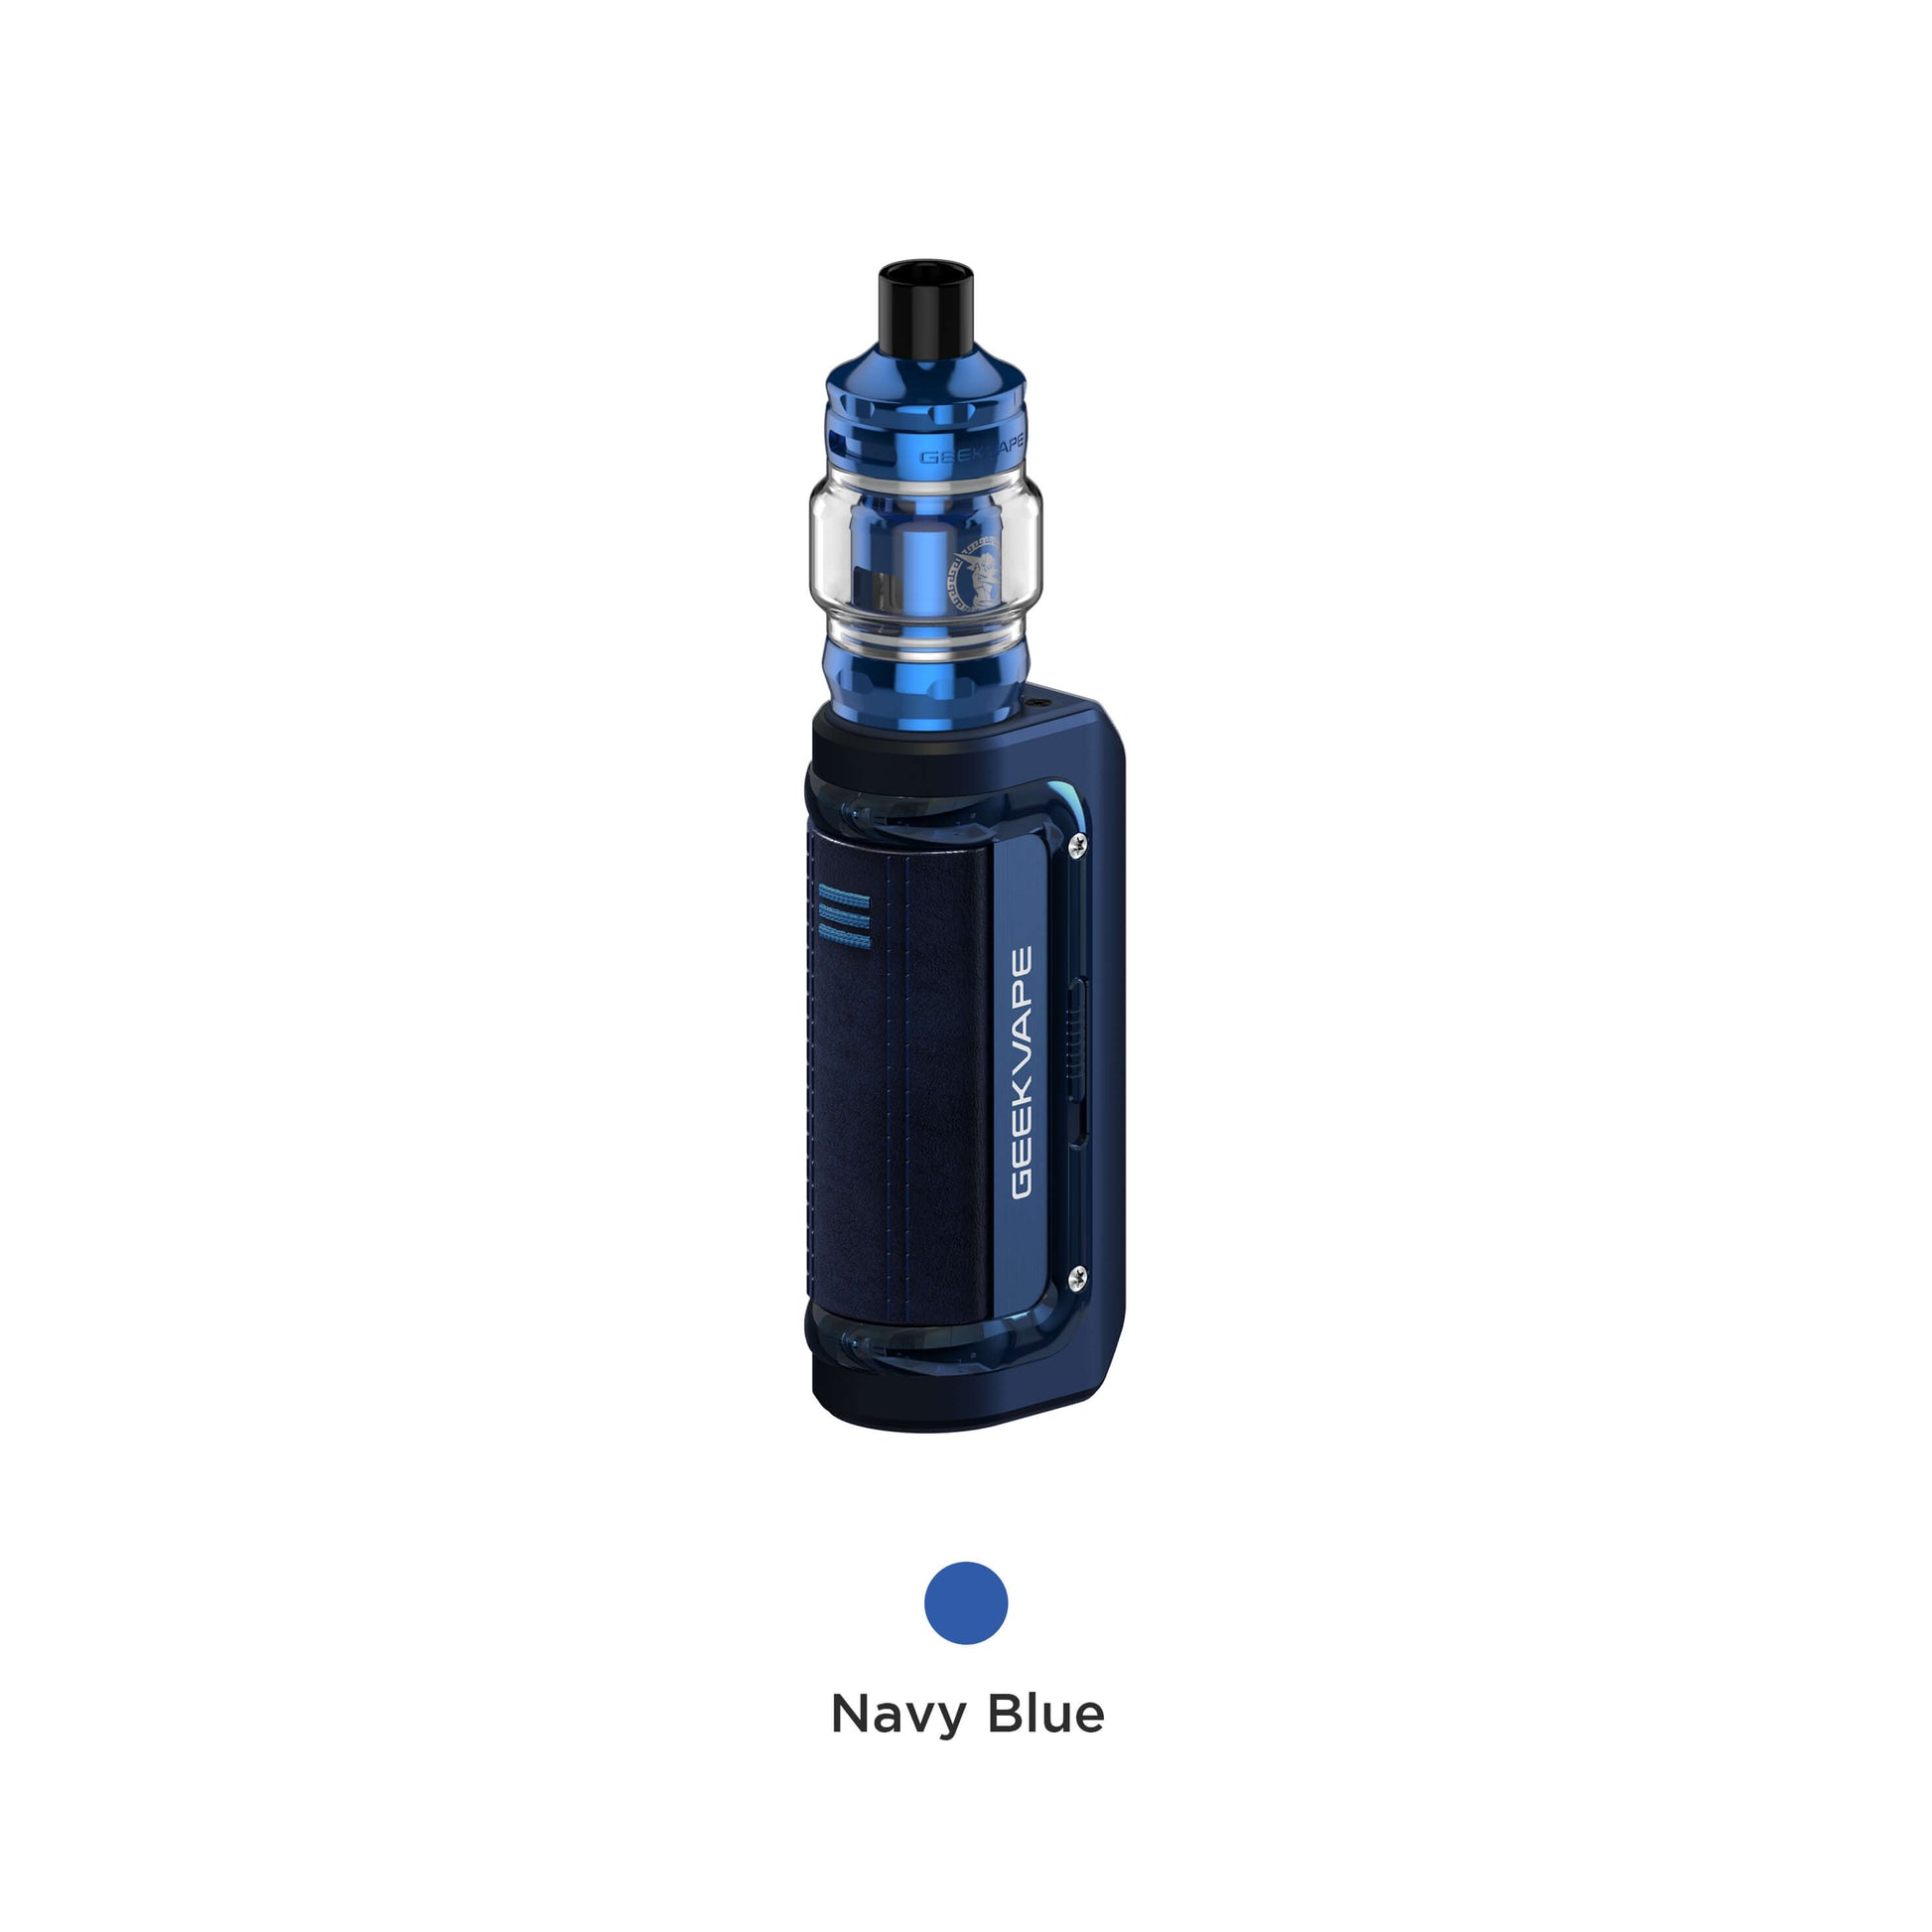 a navy blue color vape mod